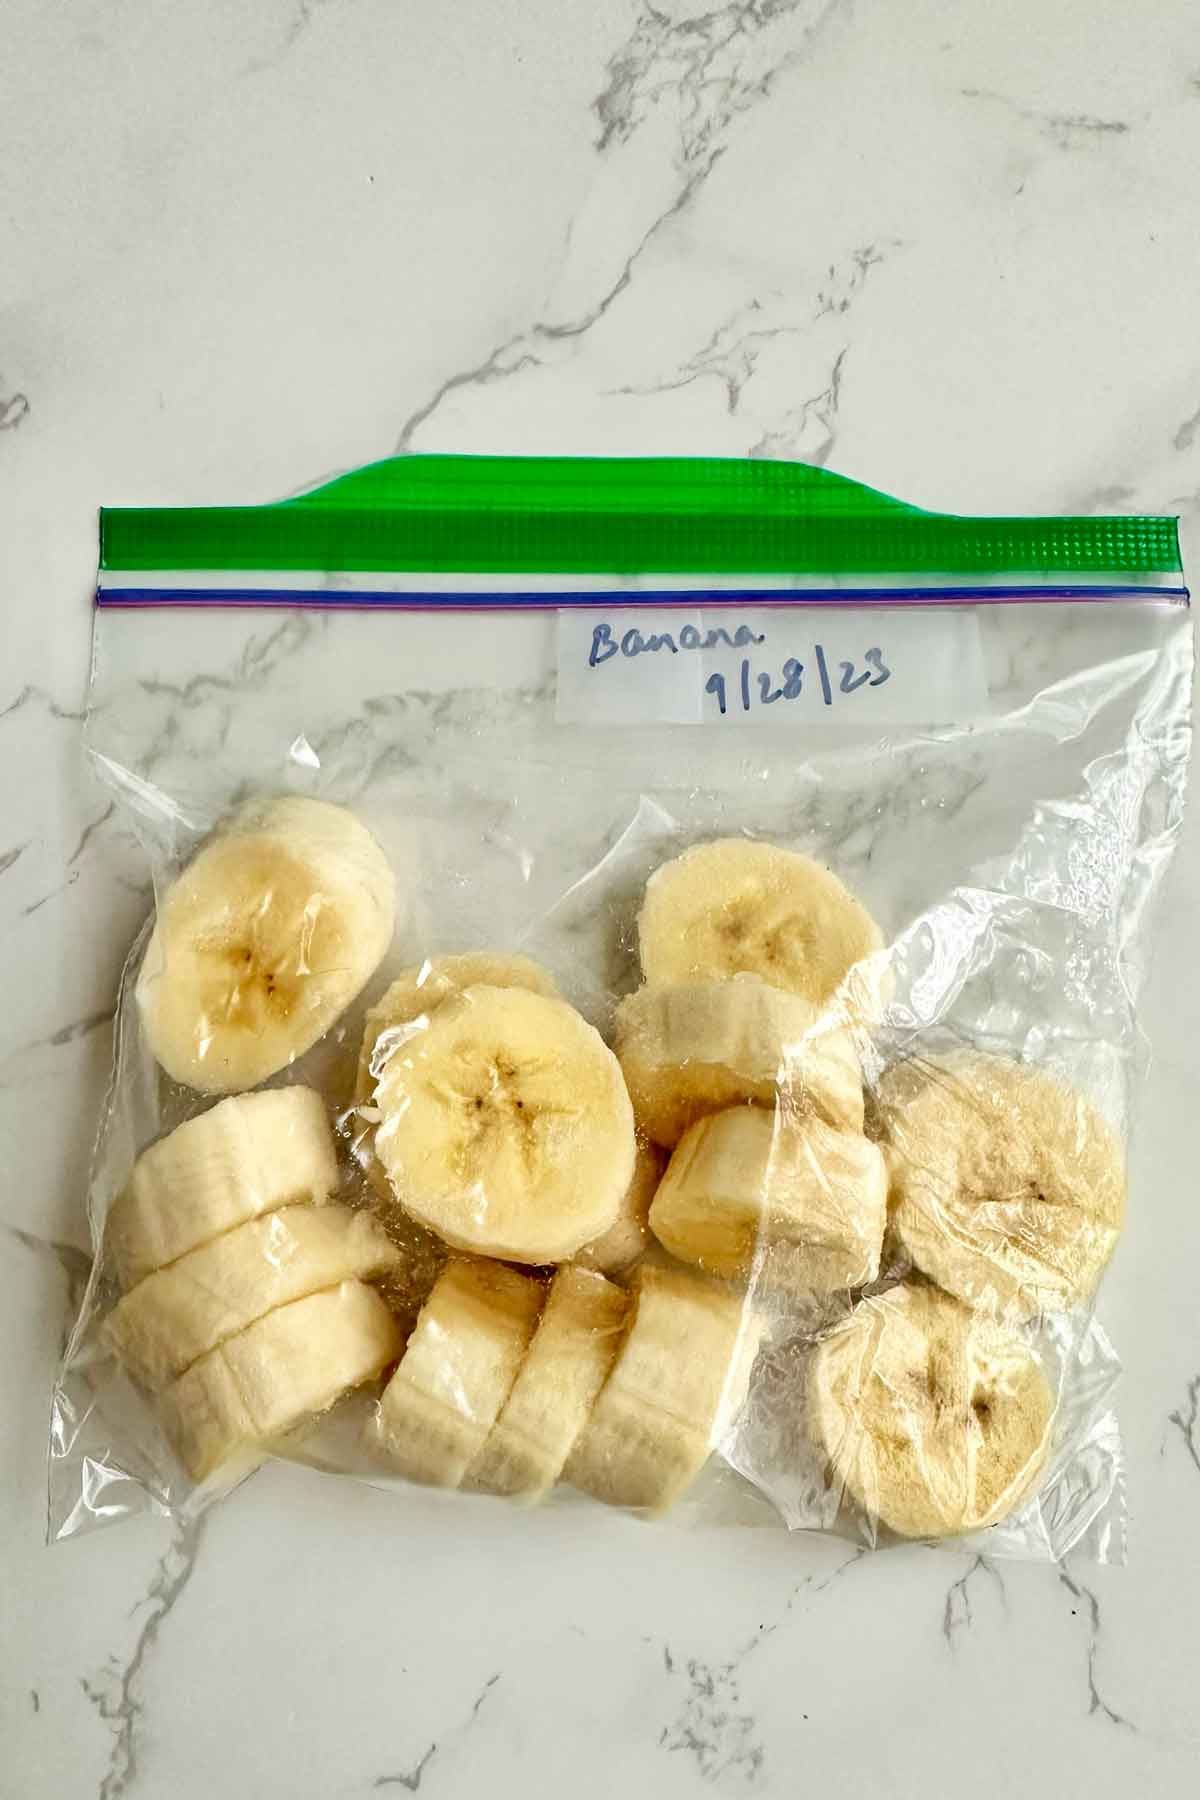 banana pieces in a ziplock bag.